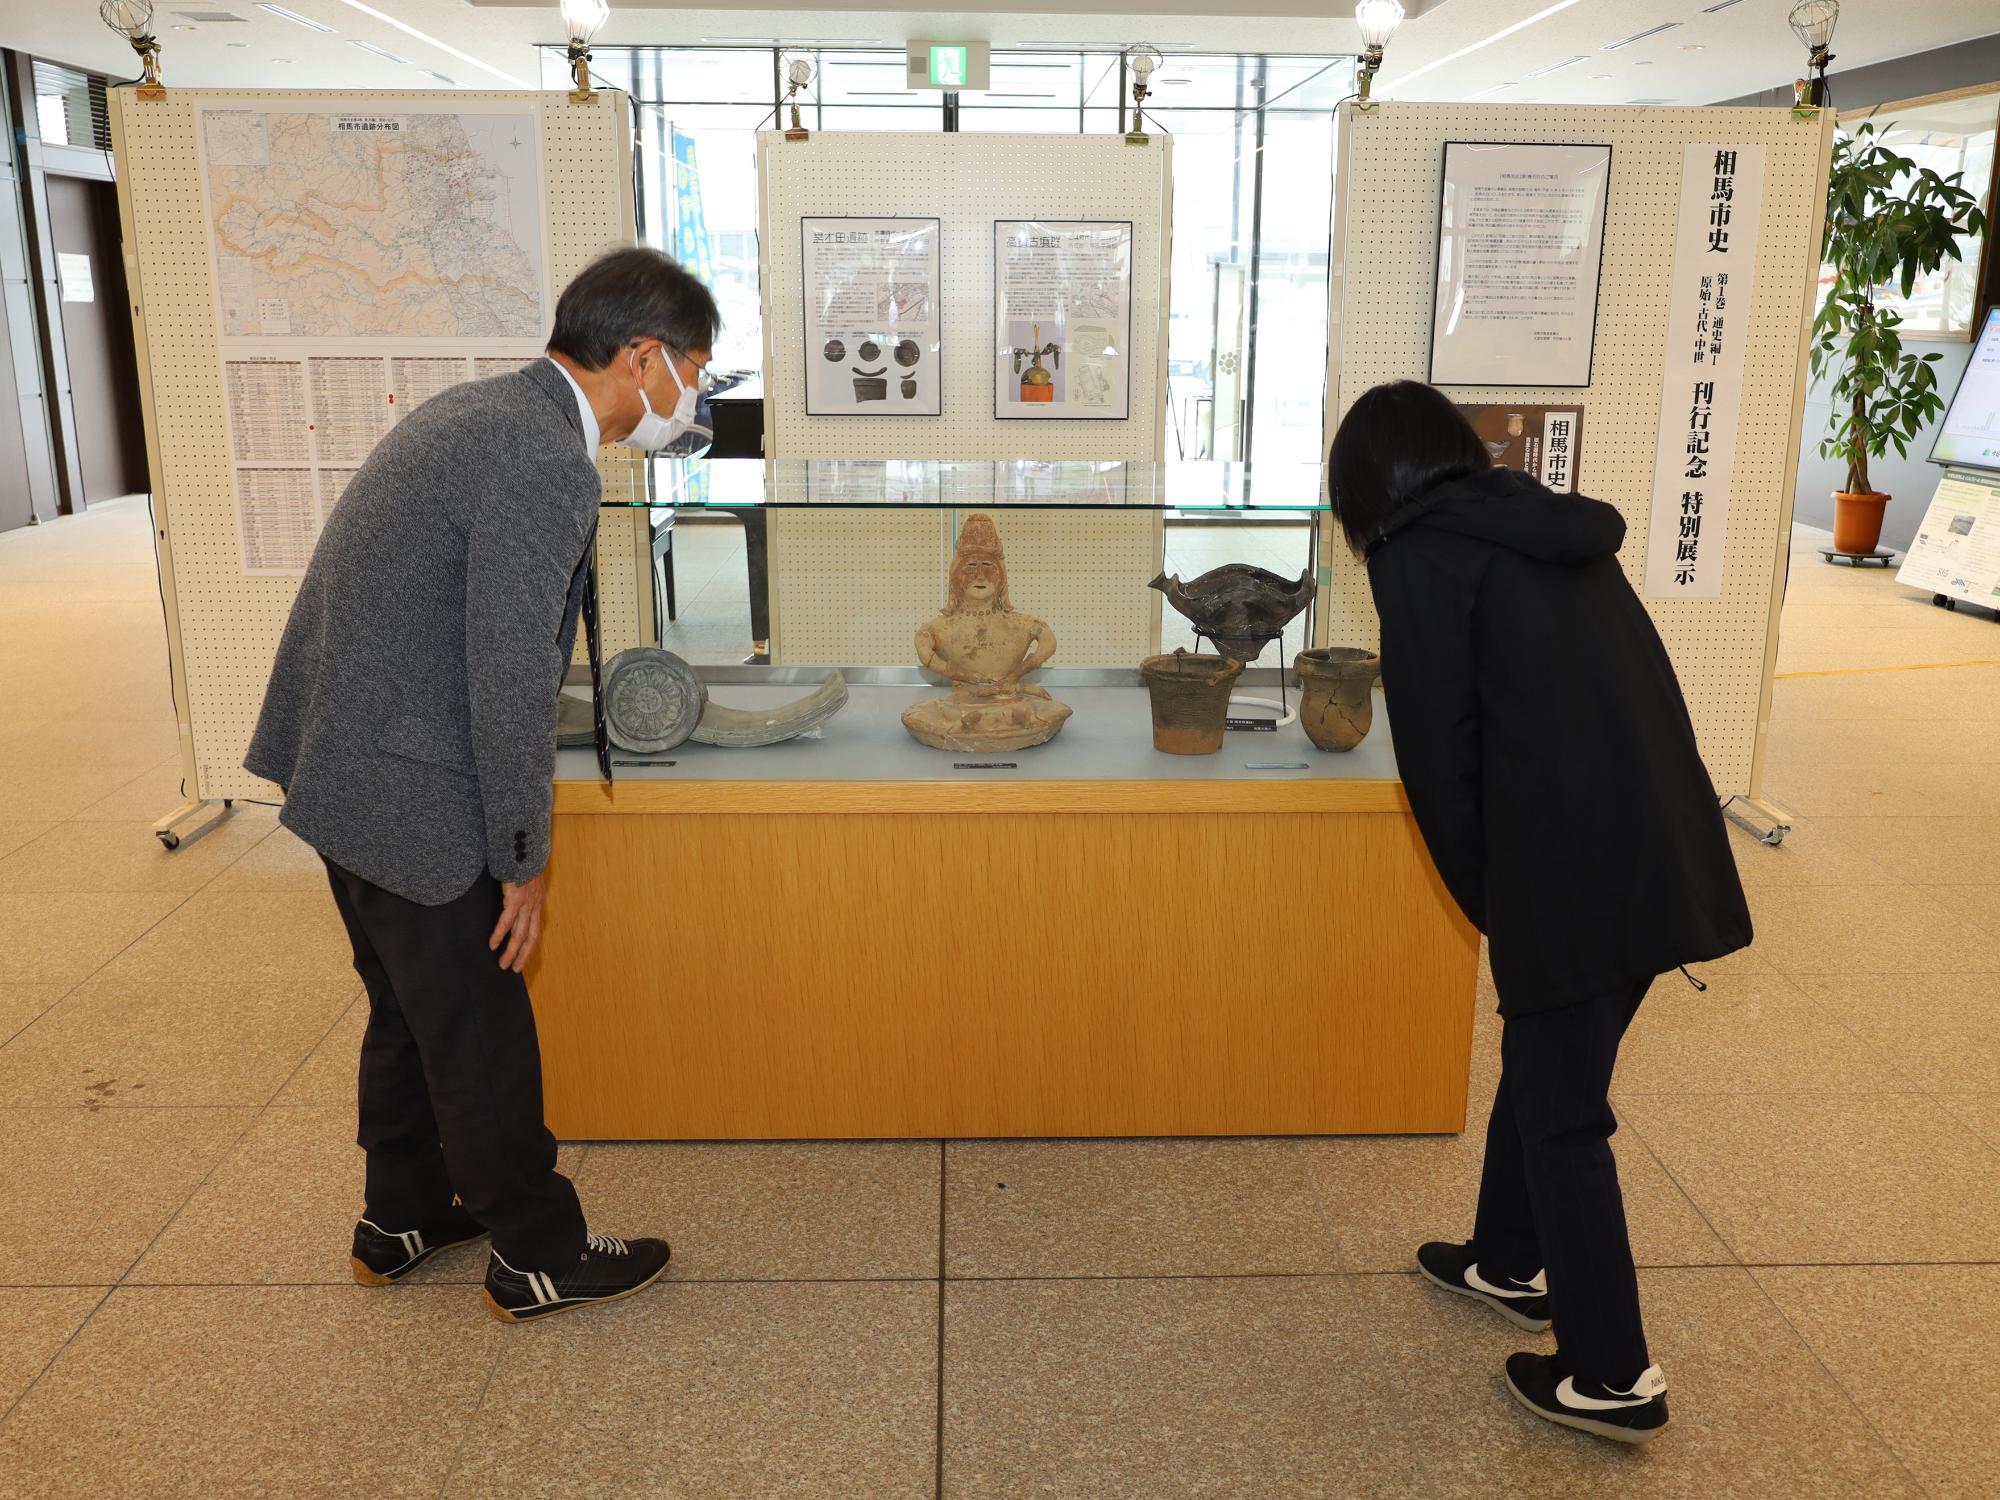 訪れた市民らが市内の主要な遺跡からの出土品の展示を観覧する様子